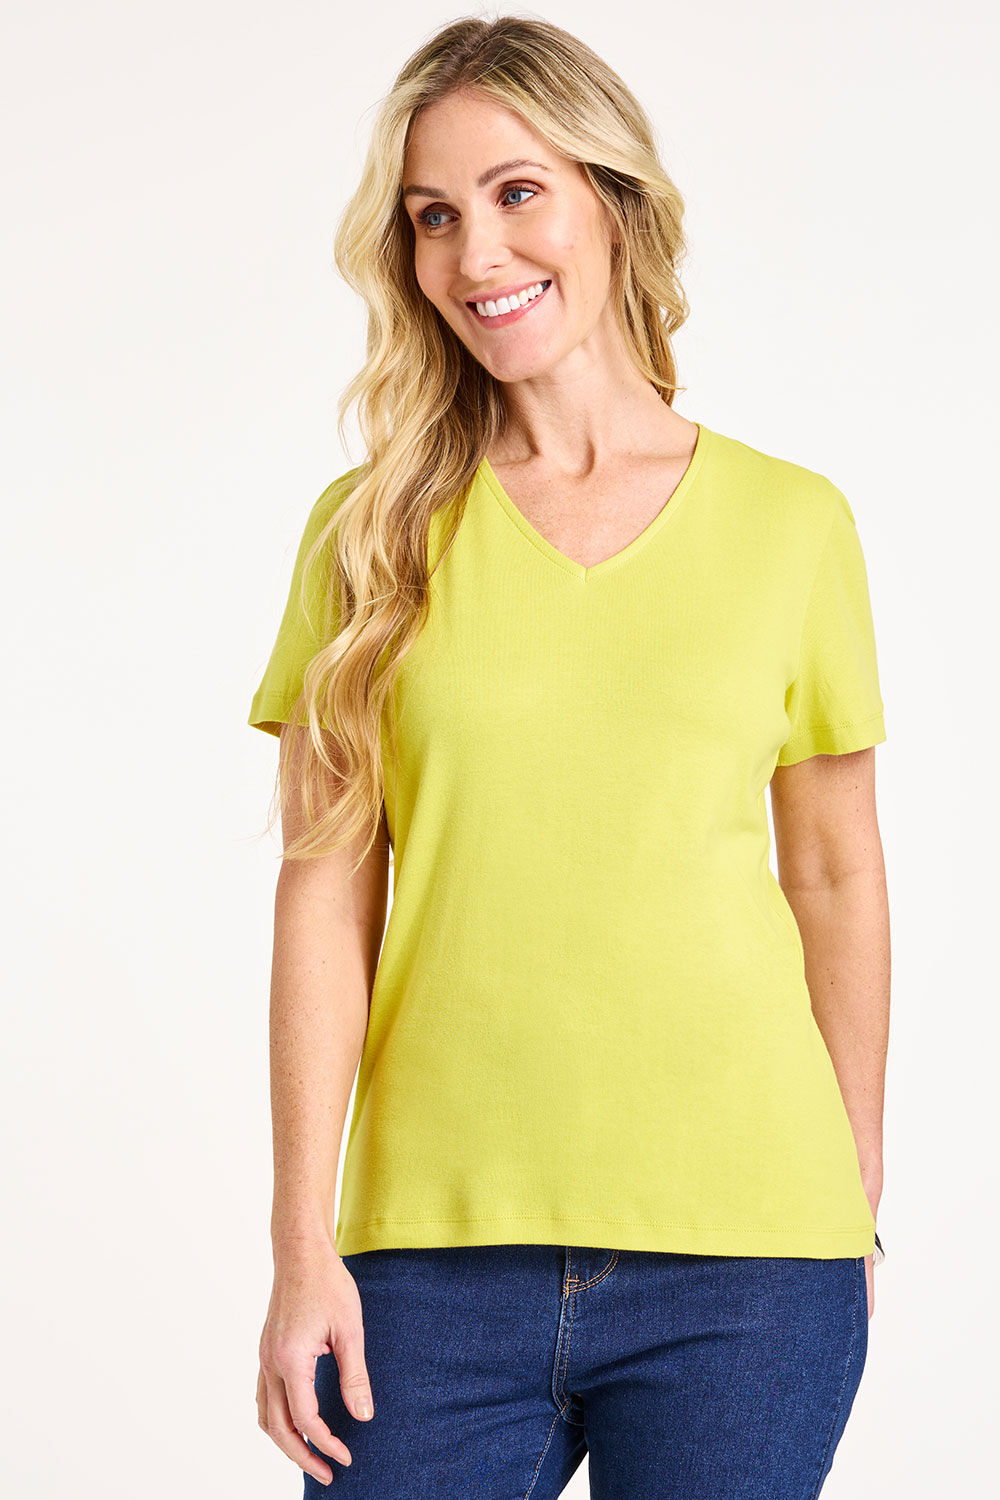 Bonmarche Women’s Yellow Cotton Classic Short Sleeve Plain V-Neck T-Shirt, Size: 28